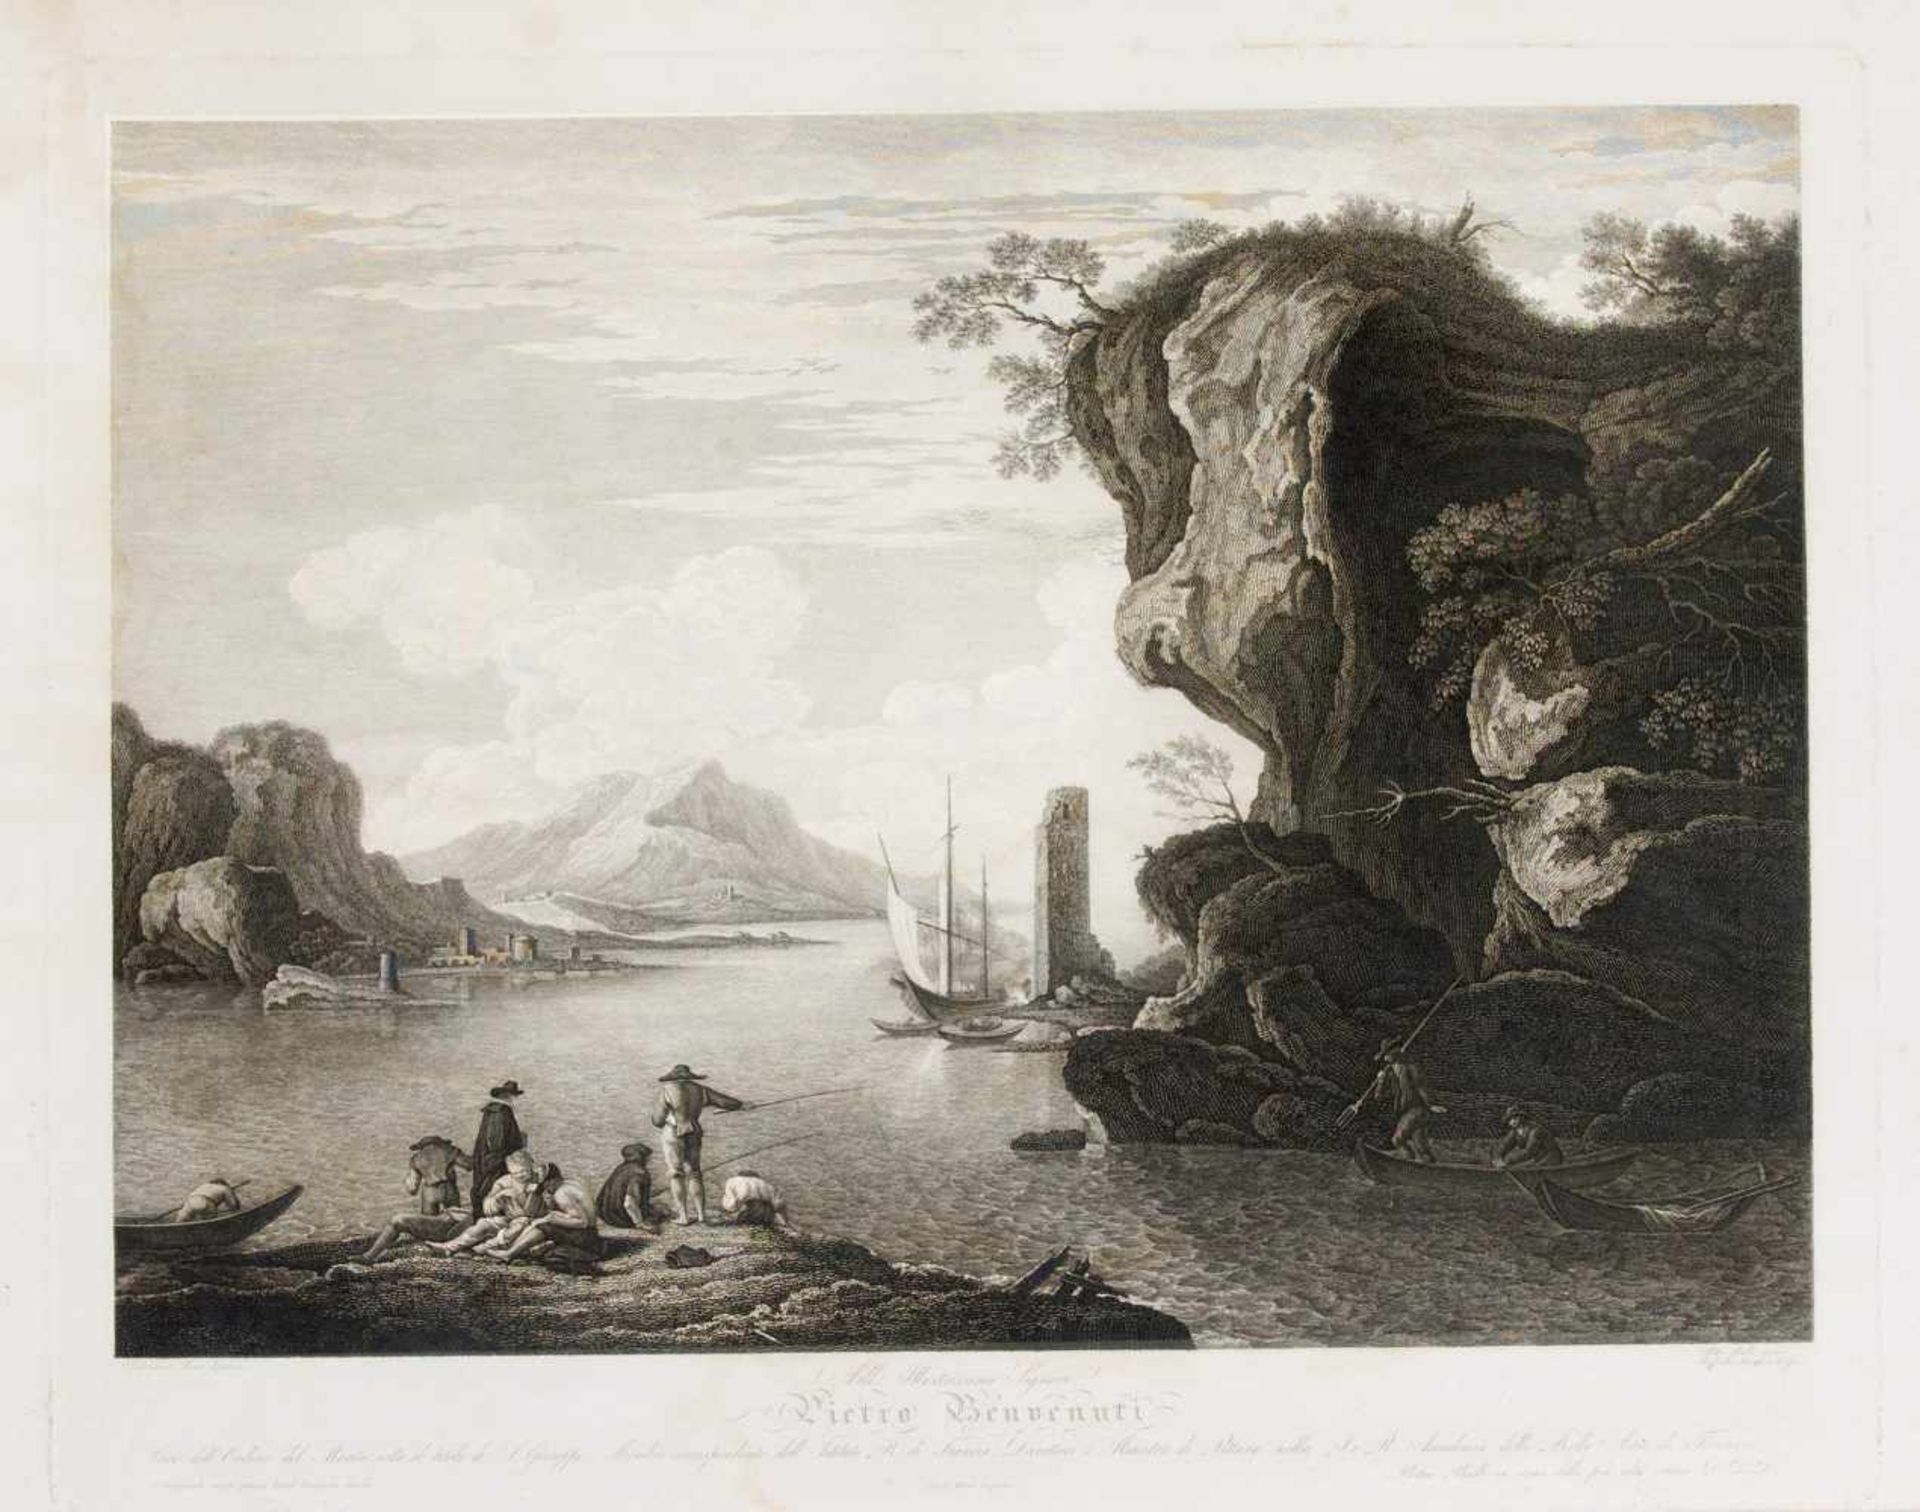 Pietro Bulli (19. Jh.) nach Salvator Rosa (1615-1673), Fischer an norditalienischem See,Radierung